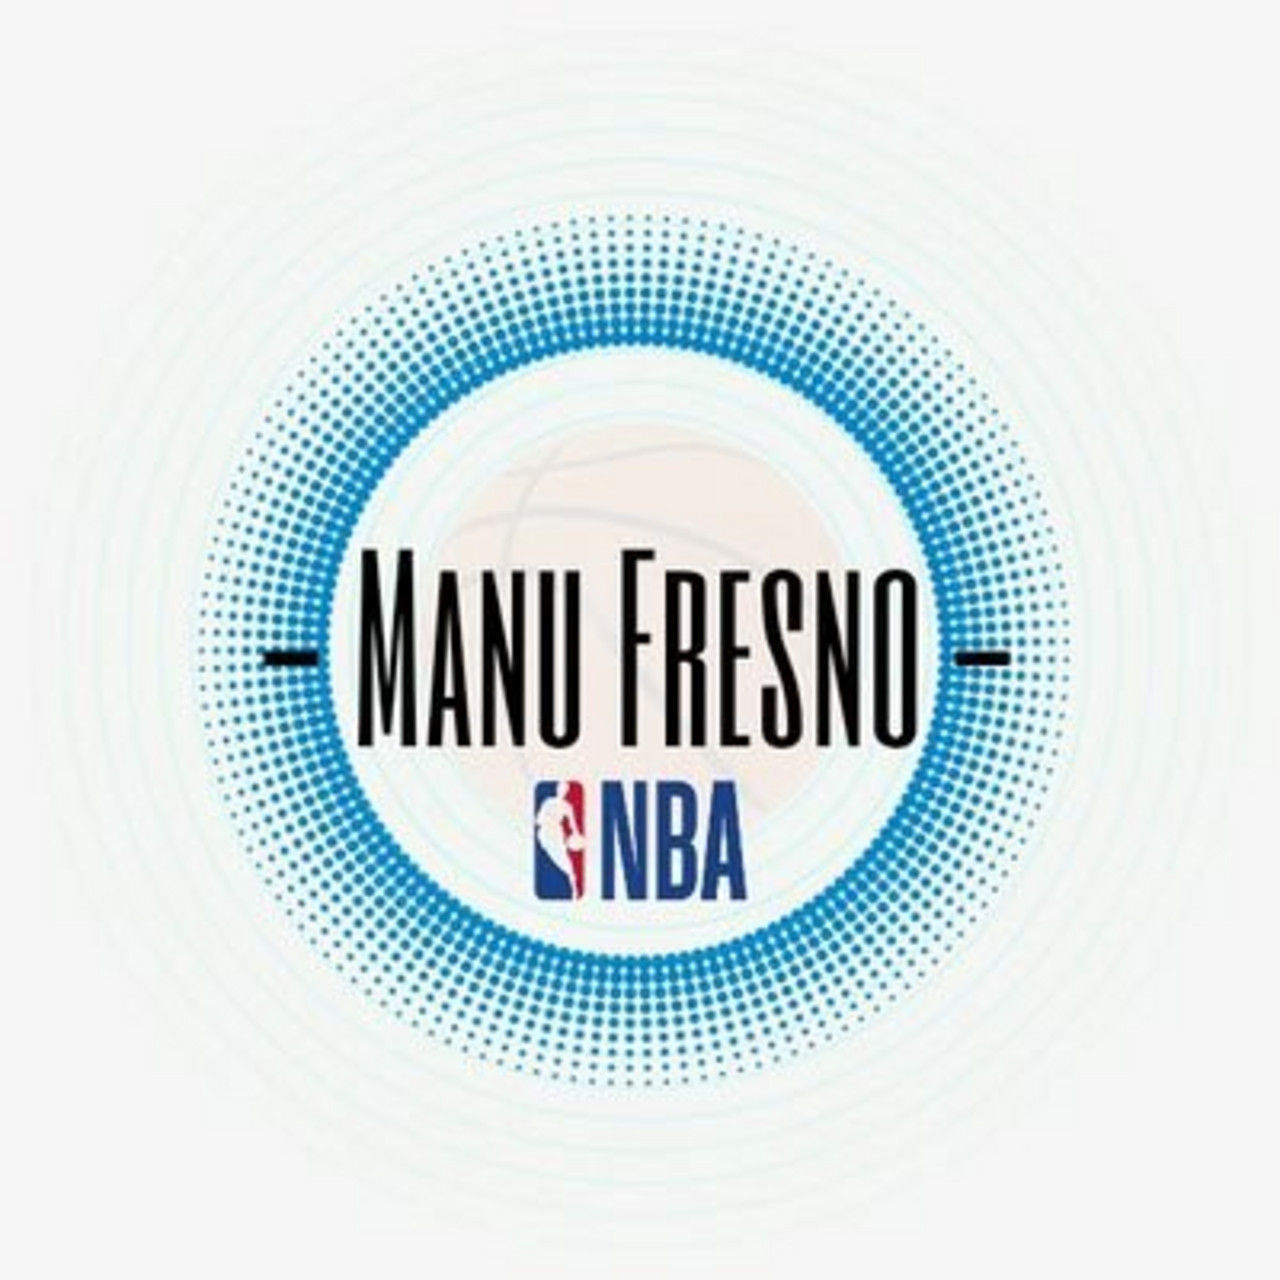 Manu Fresno